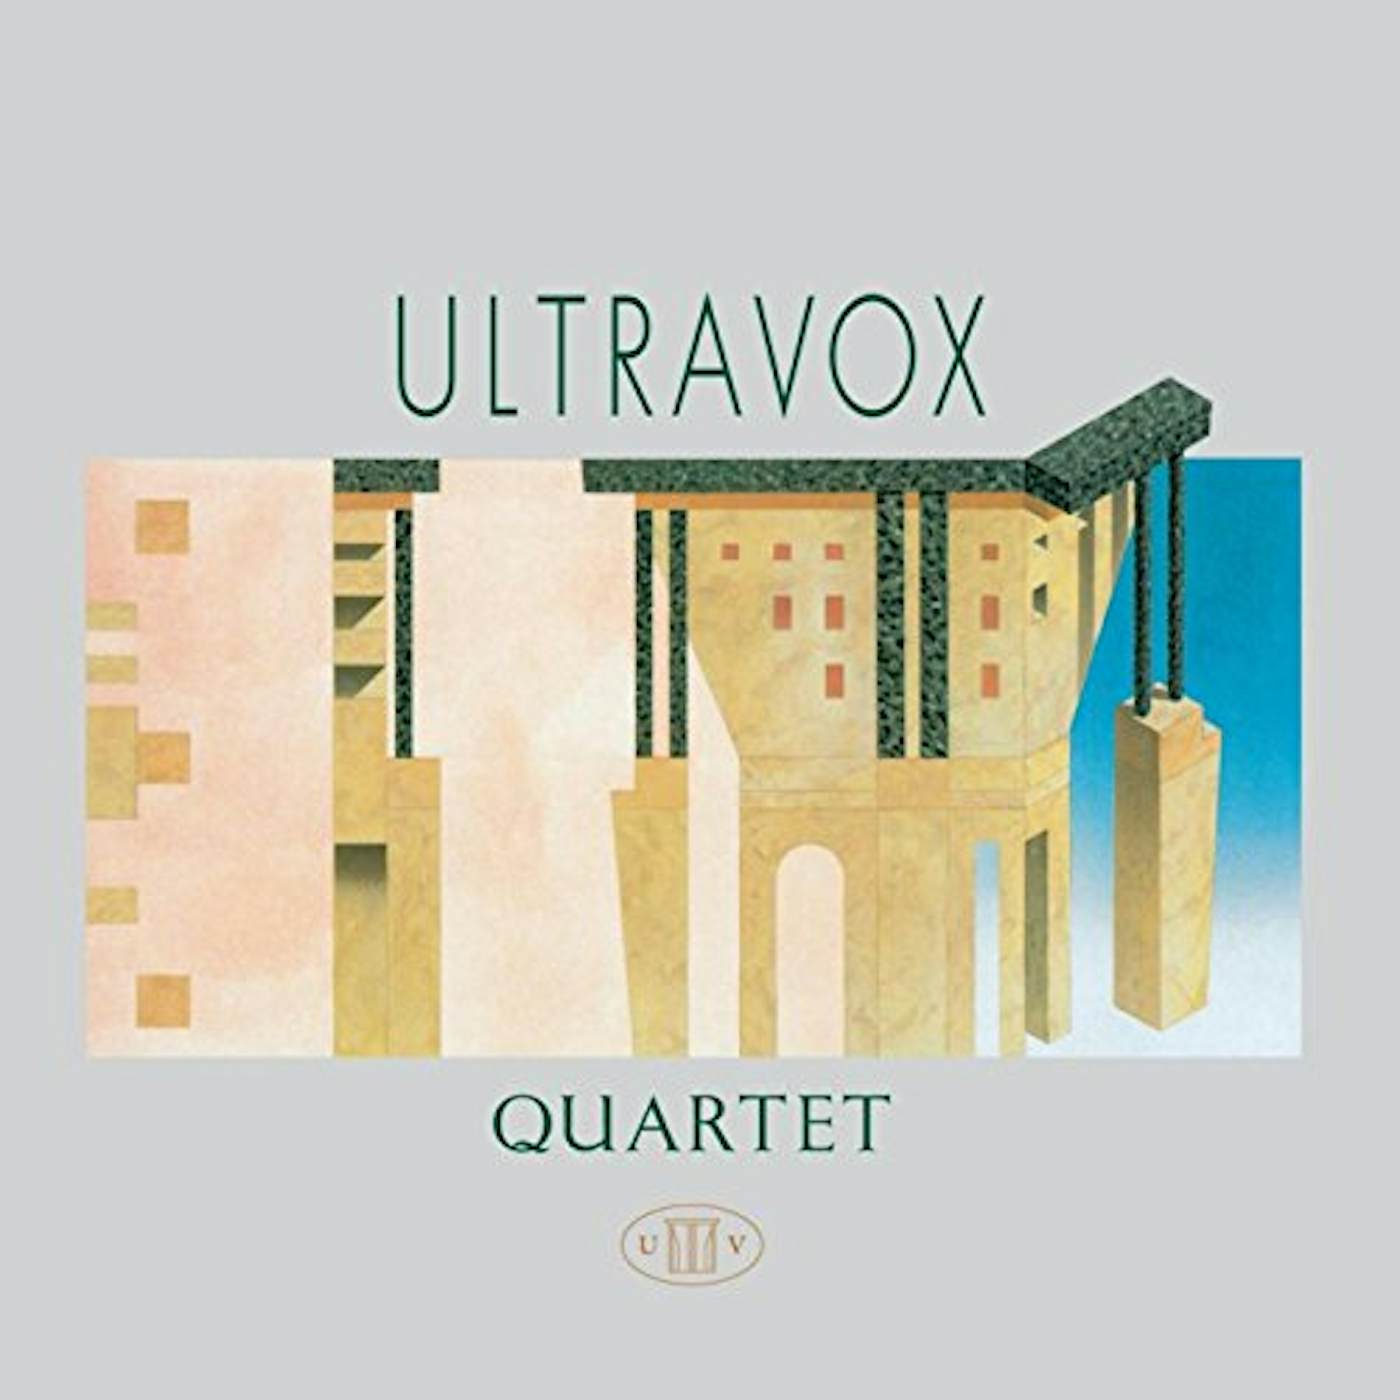 Ultravox QUARTET CD